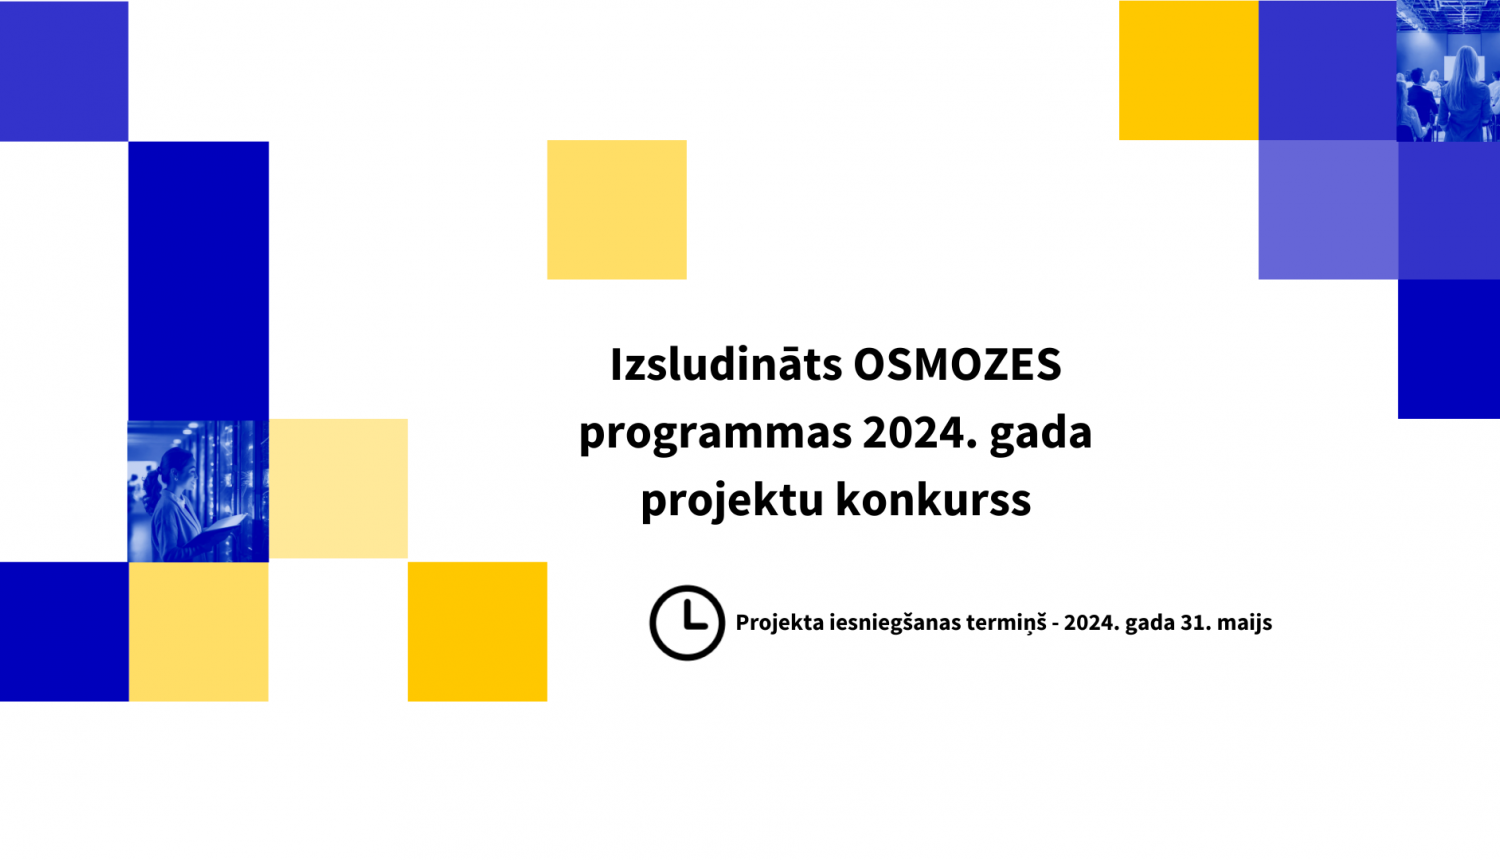 Izludināts Osmozes programmu konkurss 2024. gadam